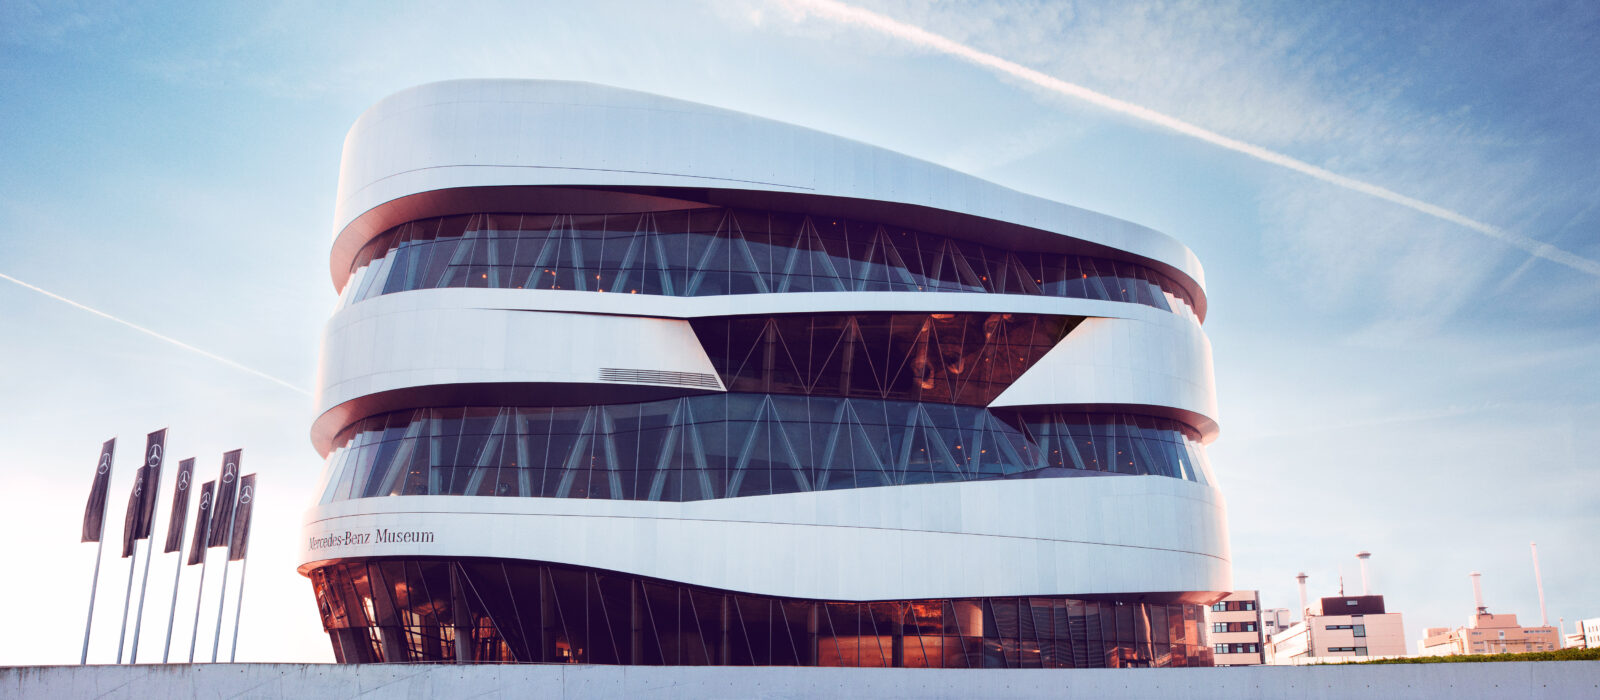 Organische Außenfassade des Mercedes-Benz Museums mit vielen Glaselementen und einem Eingangsbereich mit vorgelagertem Außenbereich, bestehend aus einem runden Vorplatz mit angelagerten Sitzgelegenheiten ähnlich einem Amphitheater.